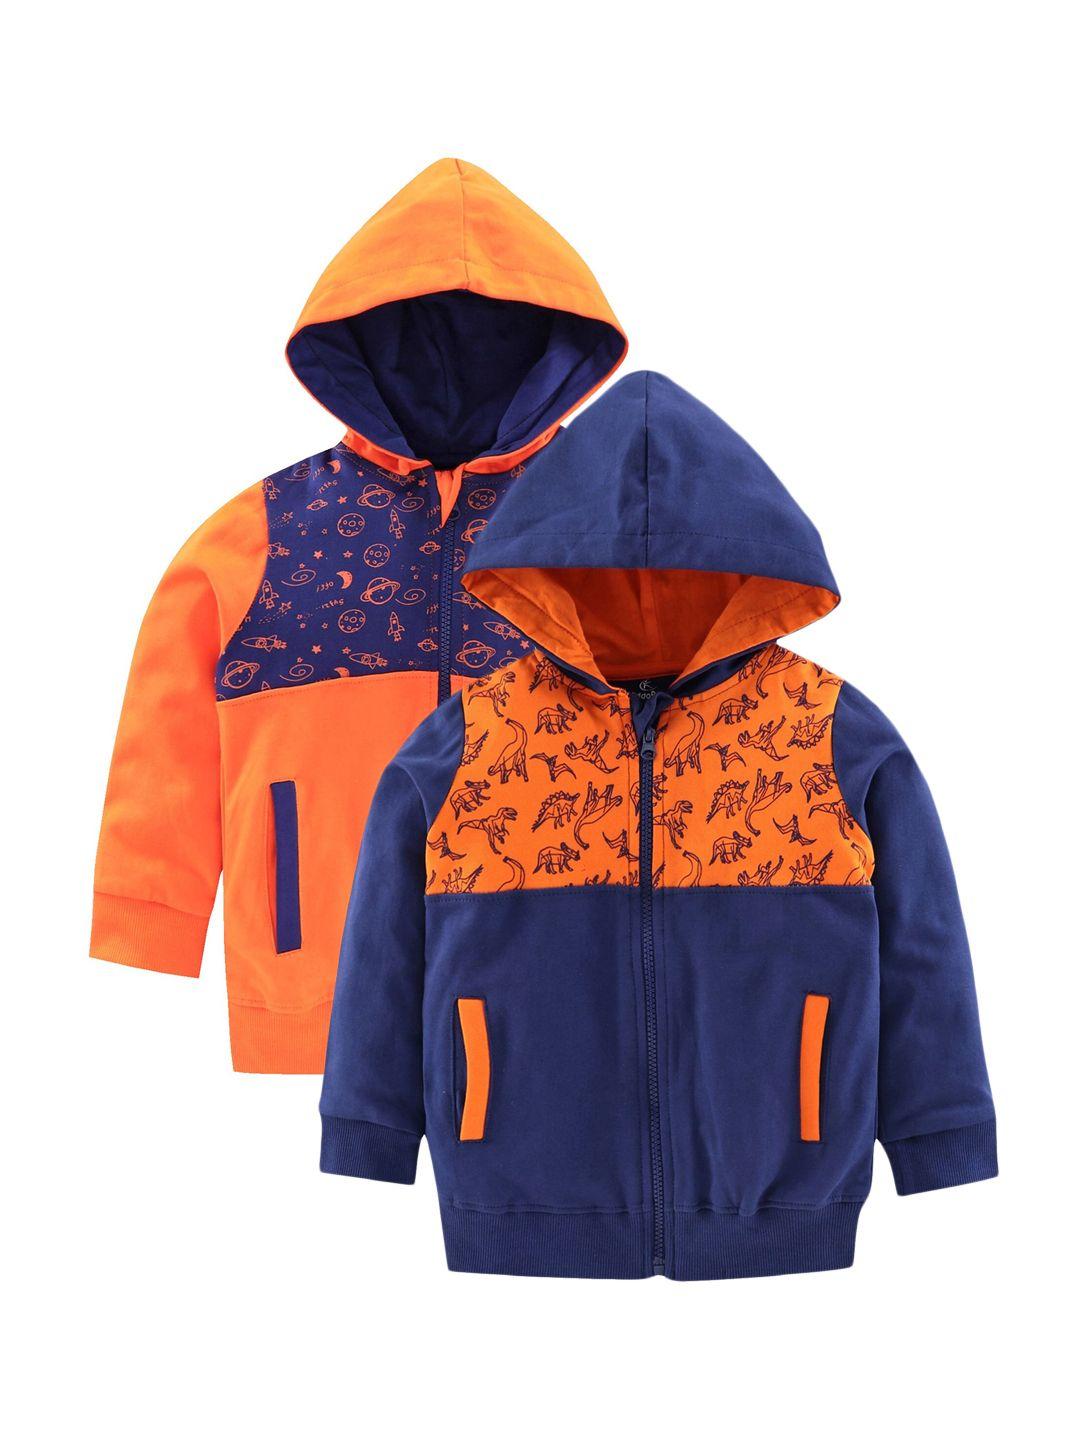 kiddopanti boys orange & navy blue printed hooded sweatshirt pack of 2